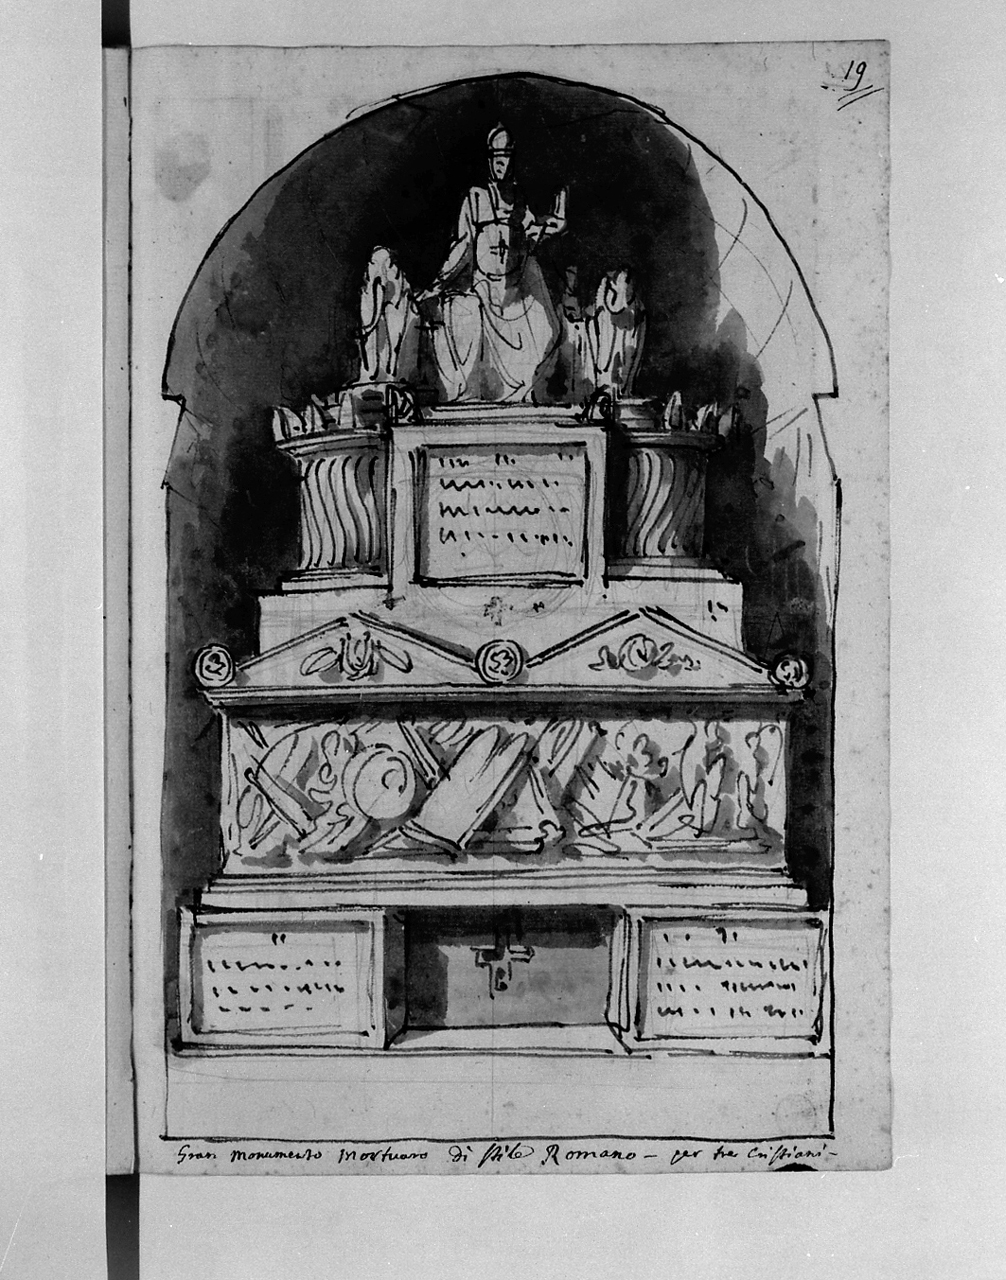 gran monumento mortuario di stile romano per tre cristiani, monumento sepolcrale (disegno, elemento d'insieme) di Basoli Antonio (sec. XIX)